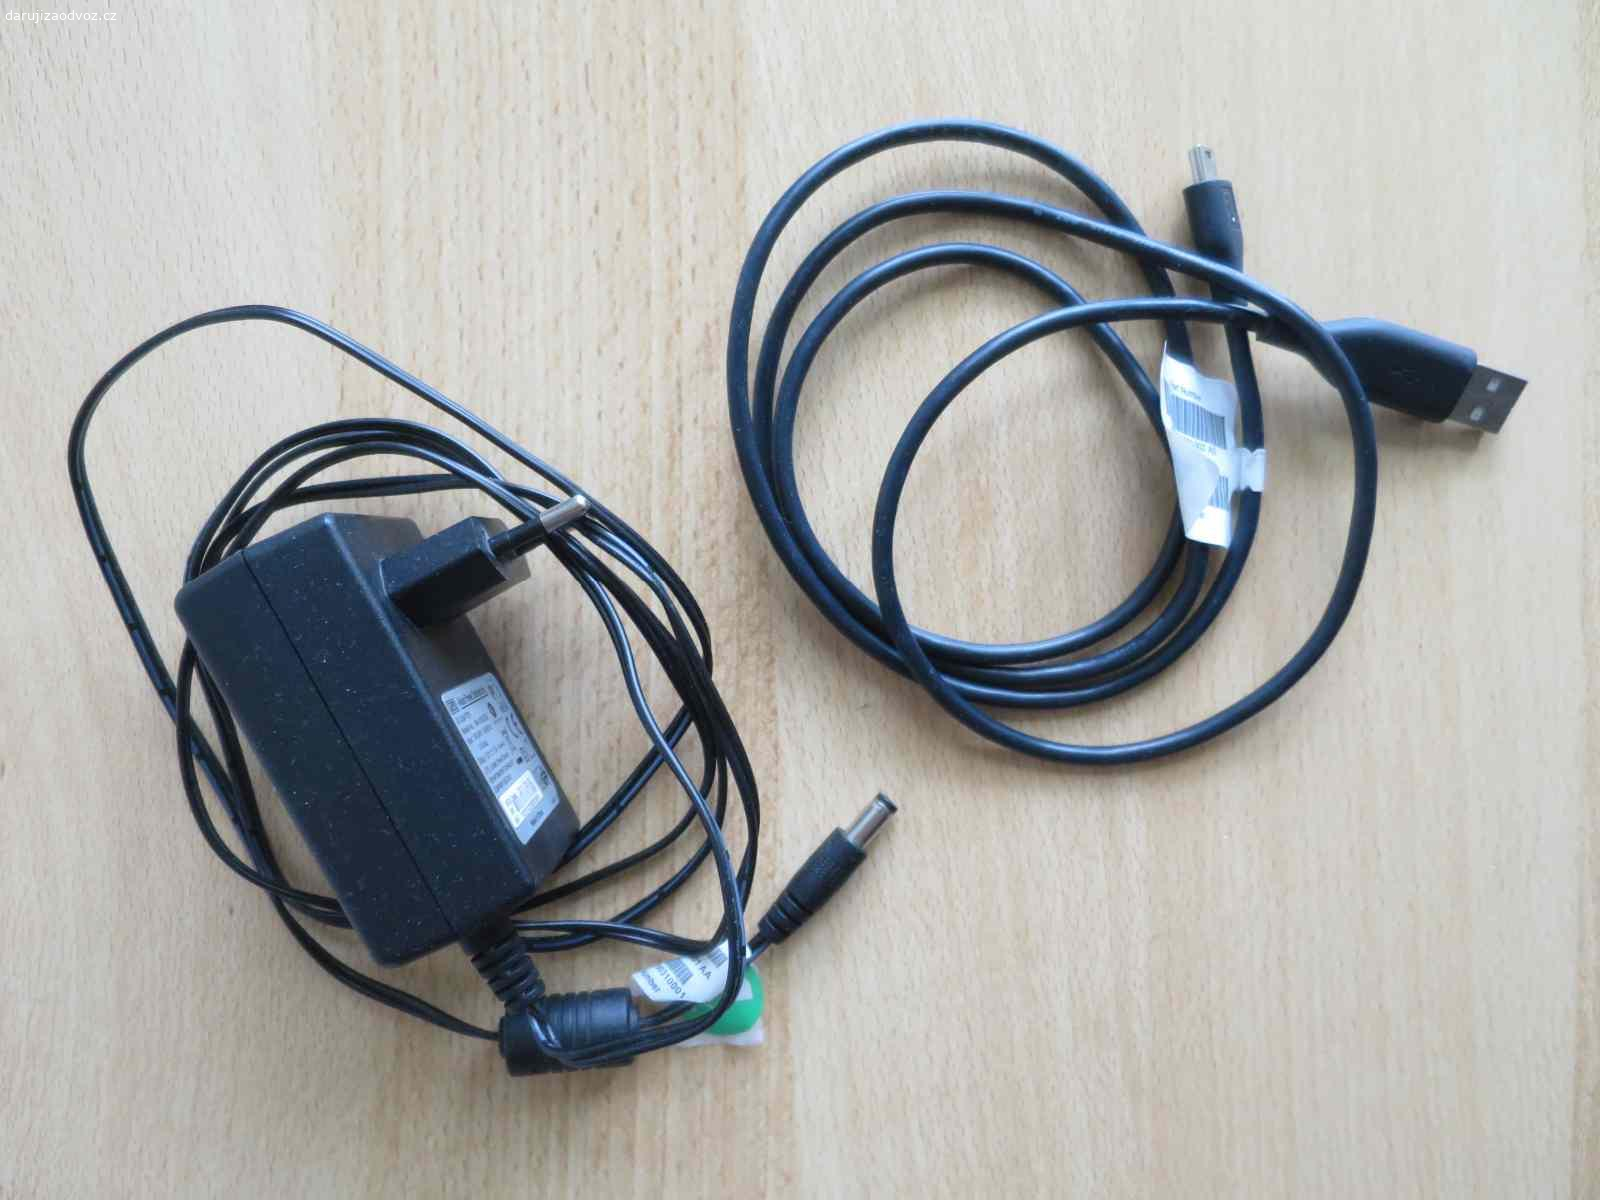 Adaptér a kabel pozůstalé po odešedším ext. disku. Adaptér 12 V / 1,5 A a kabel (z jedné strany USB).